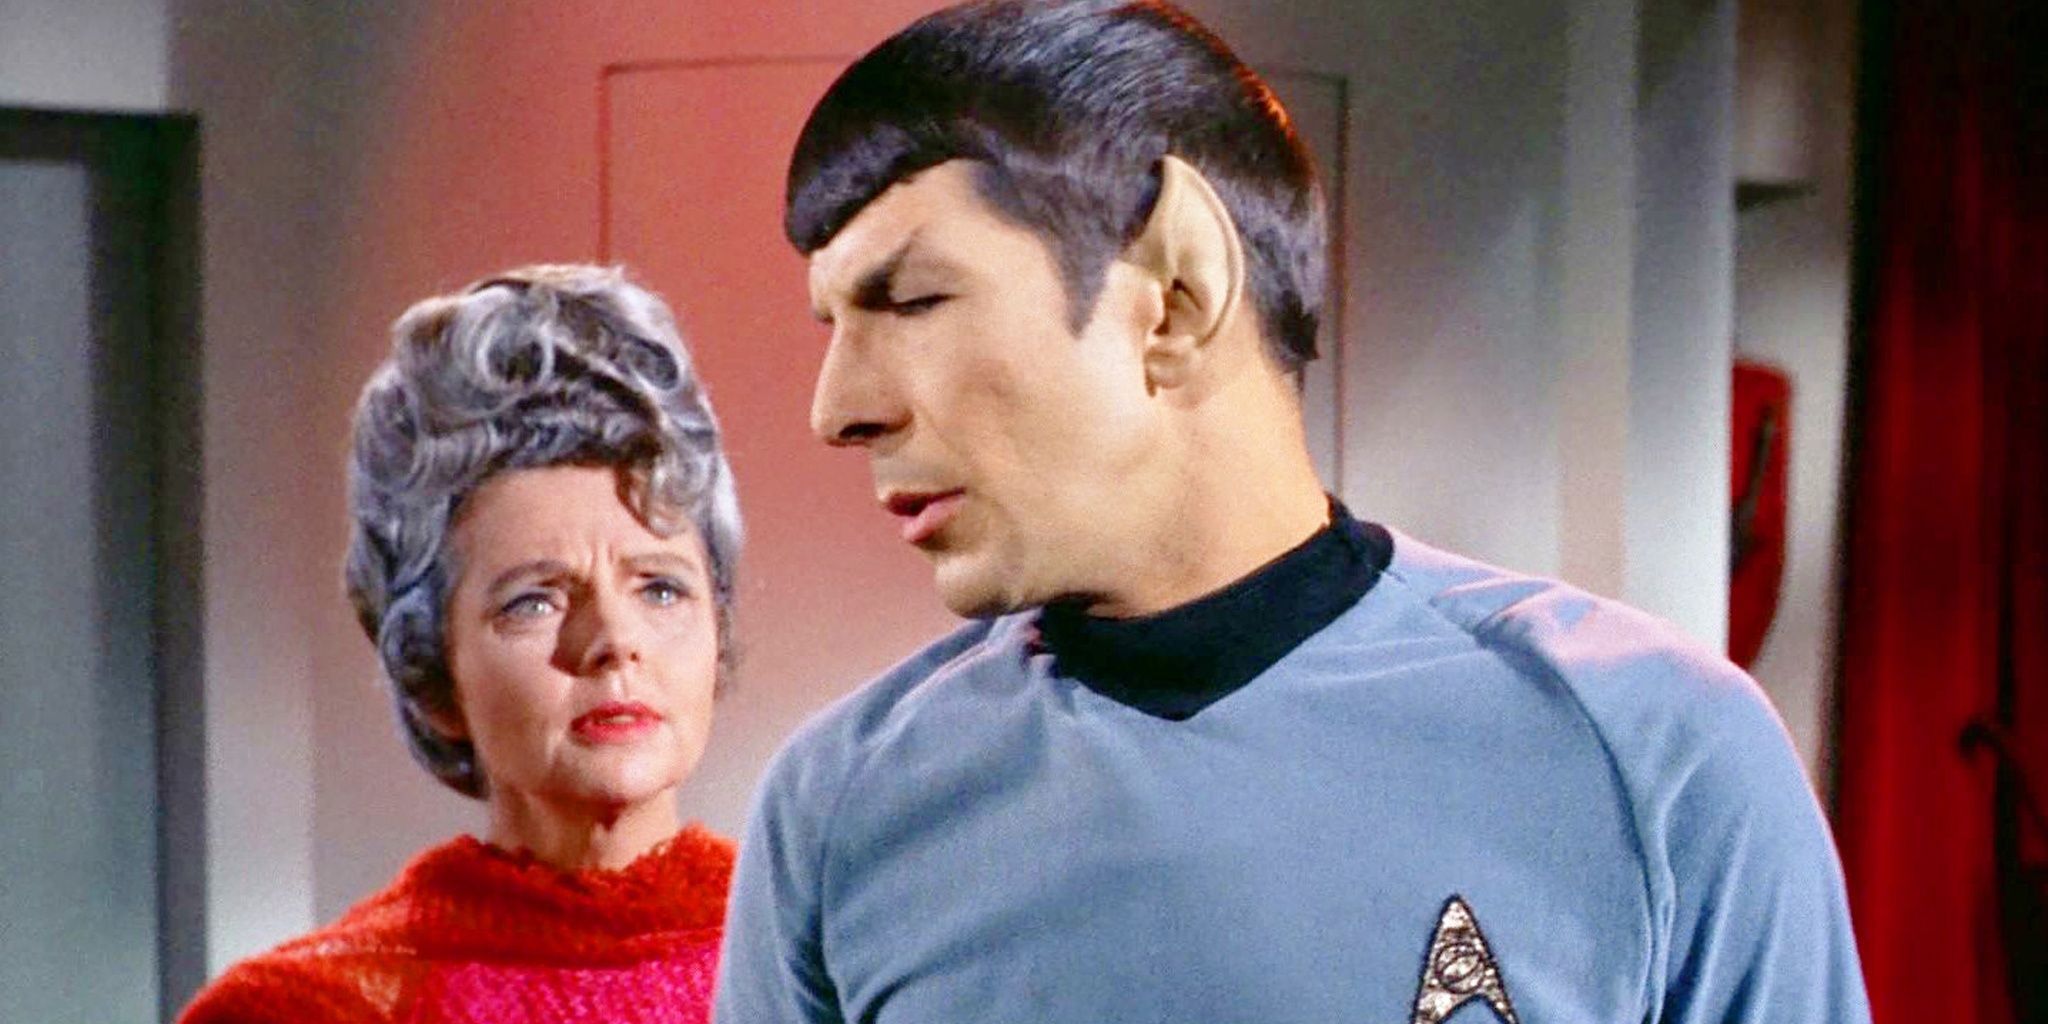 Amanda and Spock in Star Trek